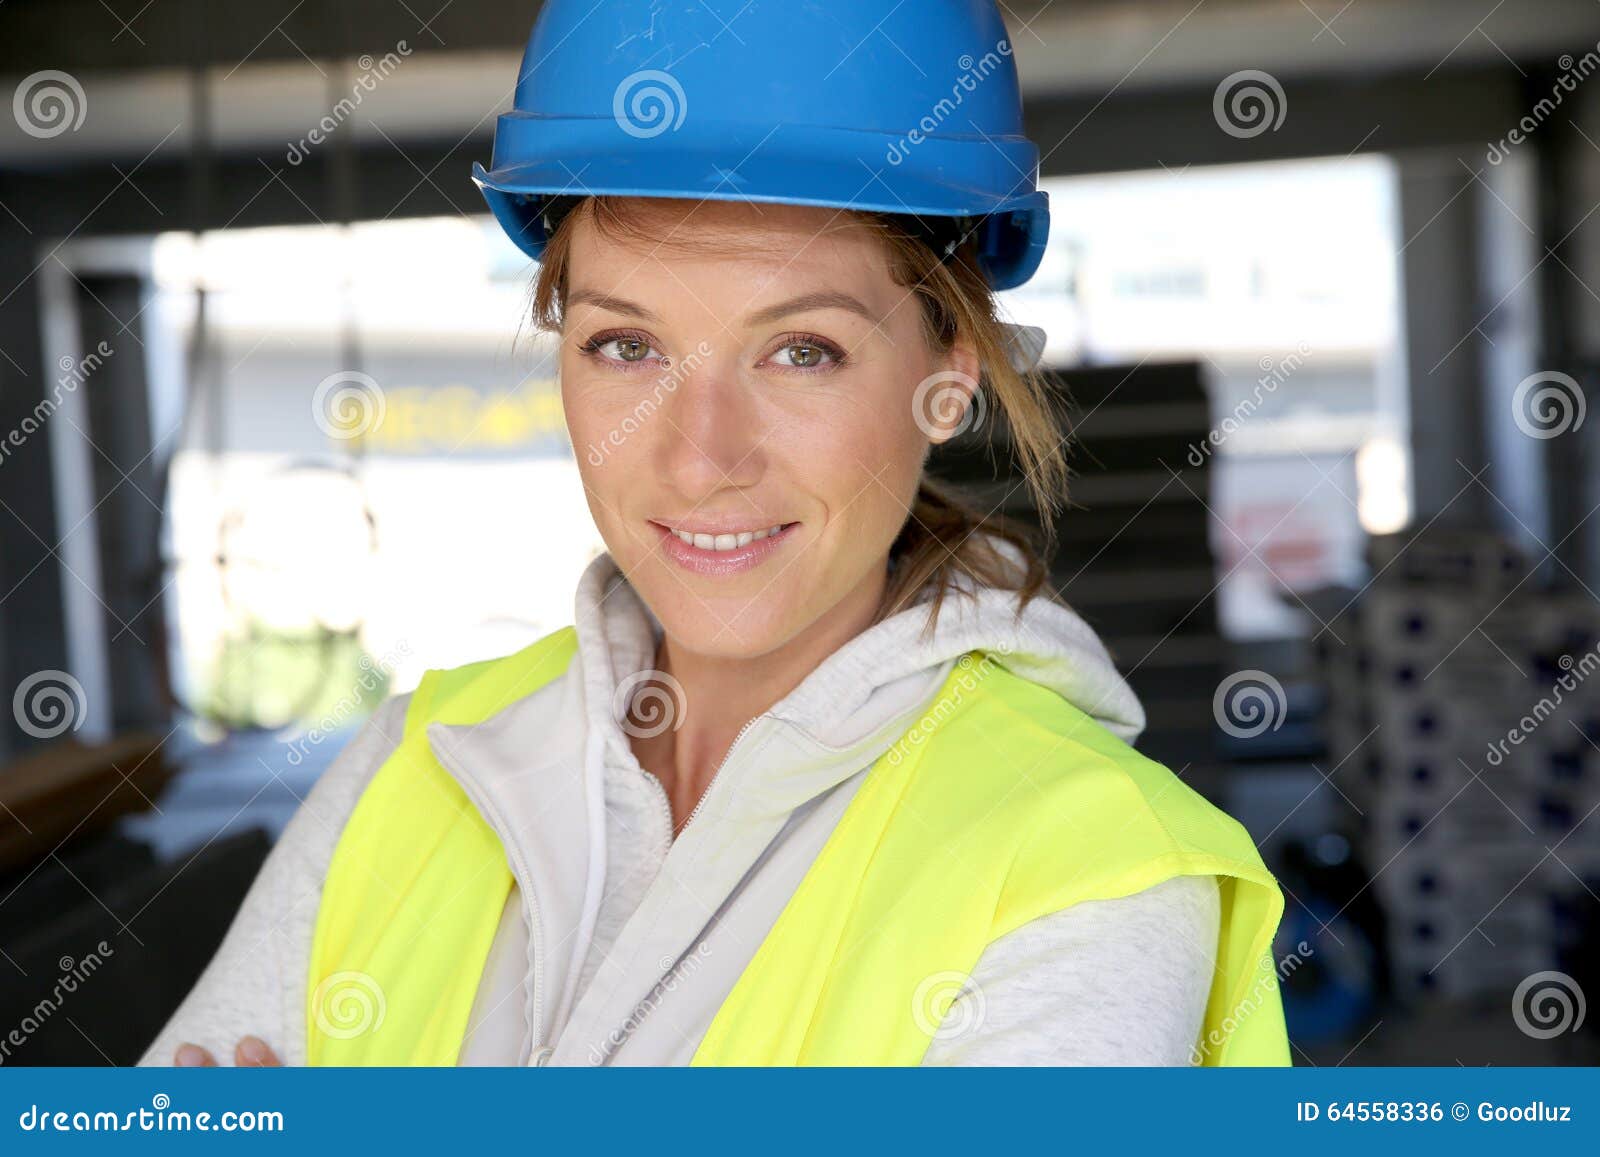 亚洲女建筑工人头戴头盔在建筑工地的碑文画像 建筑 库存图片. 图片 包括有 商业, 工程师, 职业, 有吸引力的 - 159937399